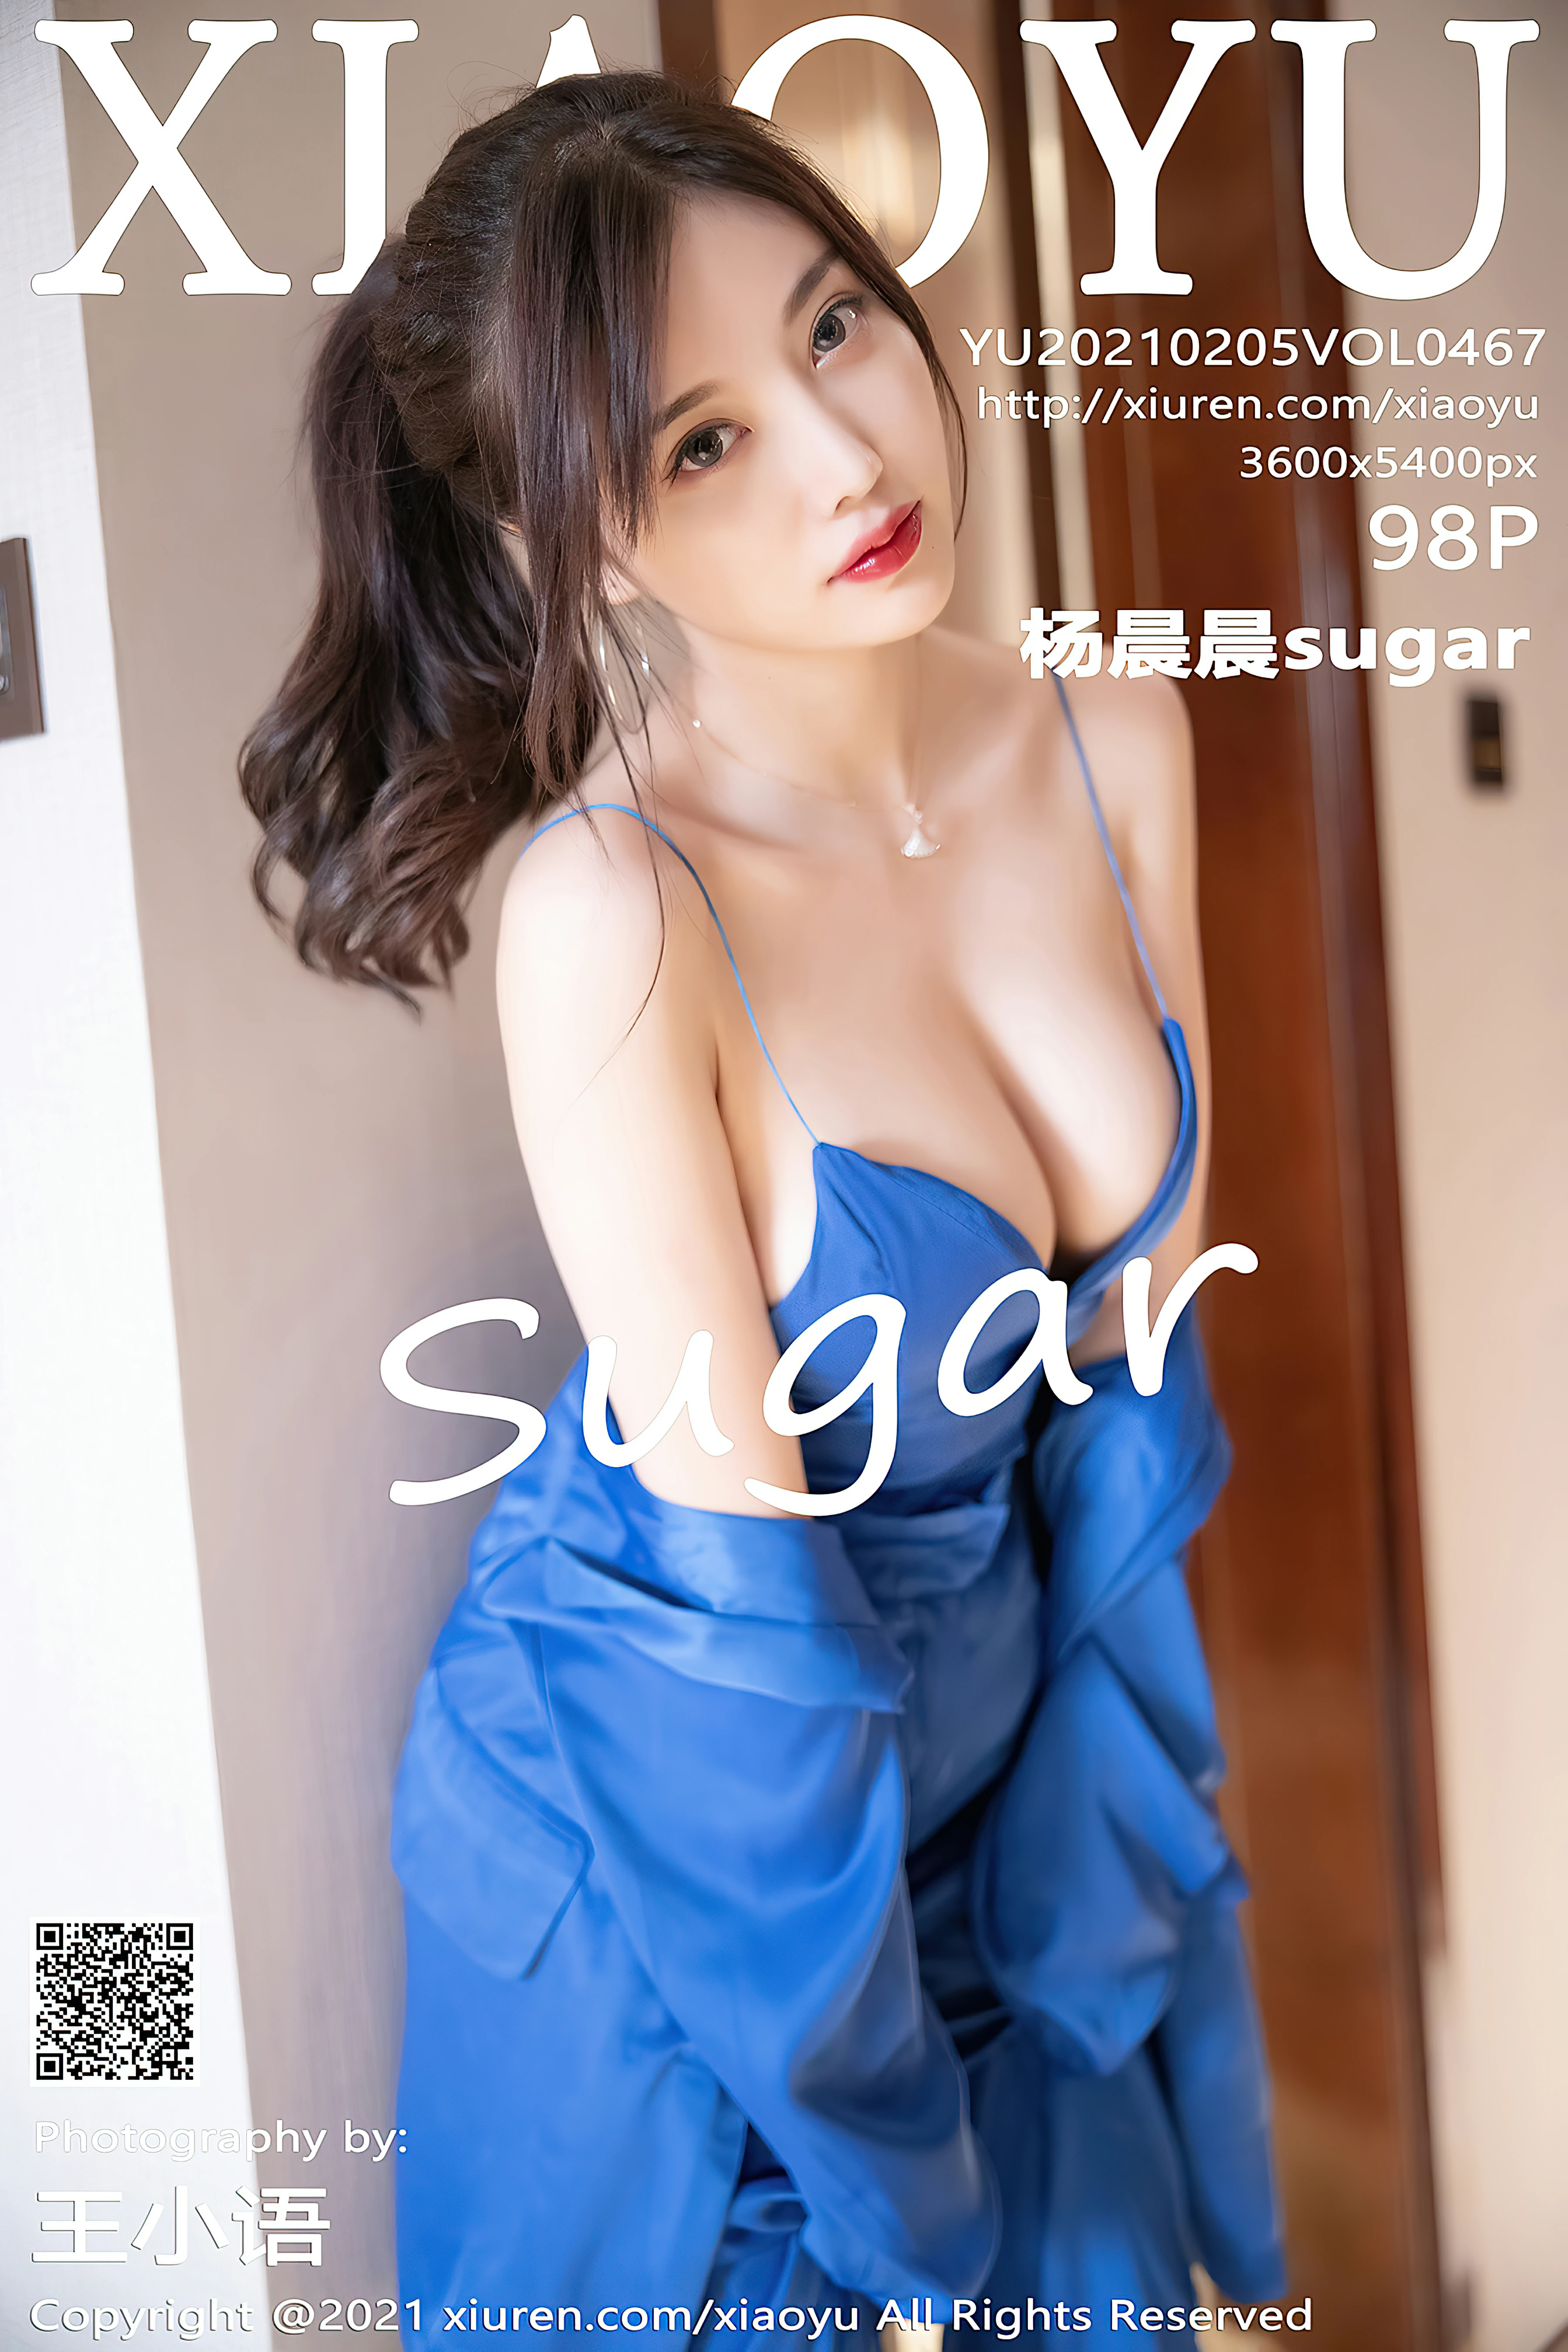 [XIAOYU语画界]YU20210205VOL0467 杨晨晨sugar 蓝色制服加蓝色内衣性感私房写真集,